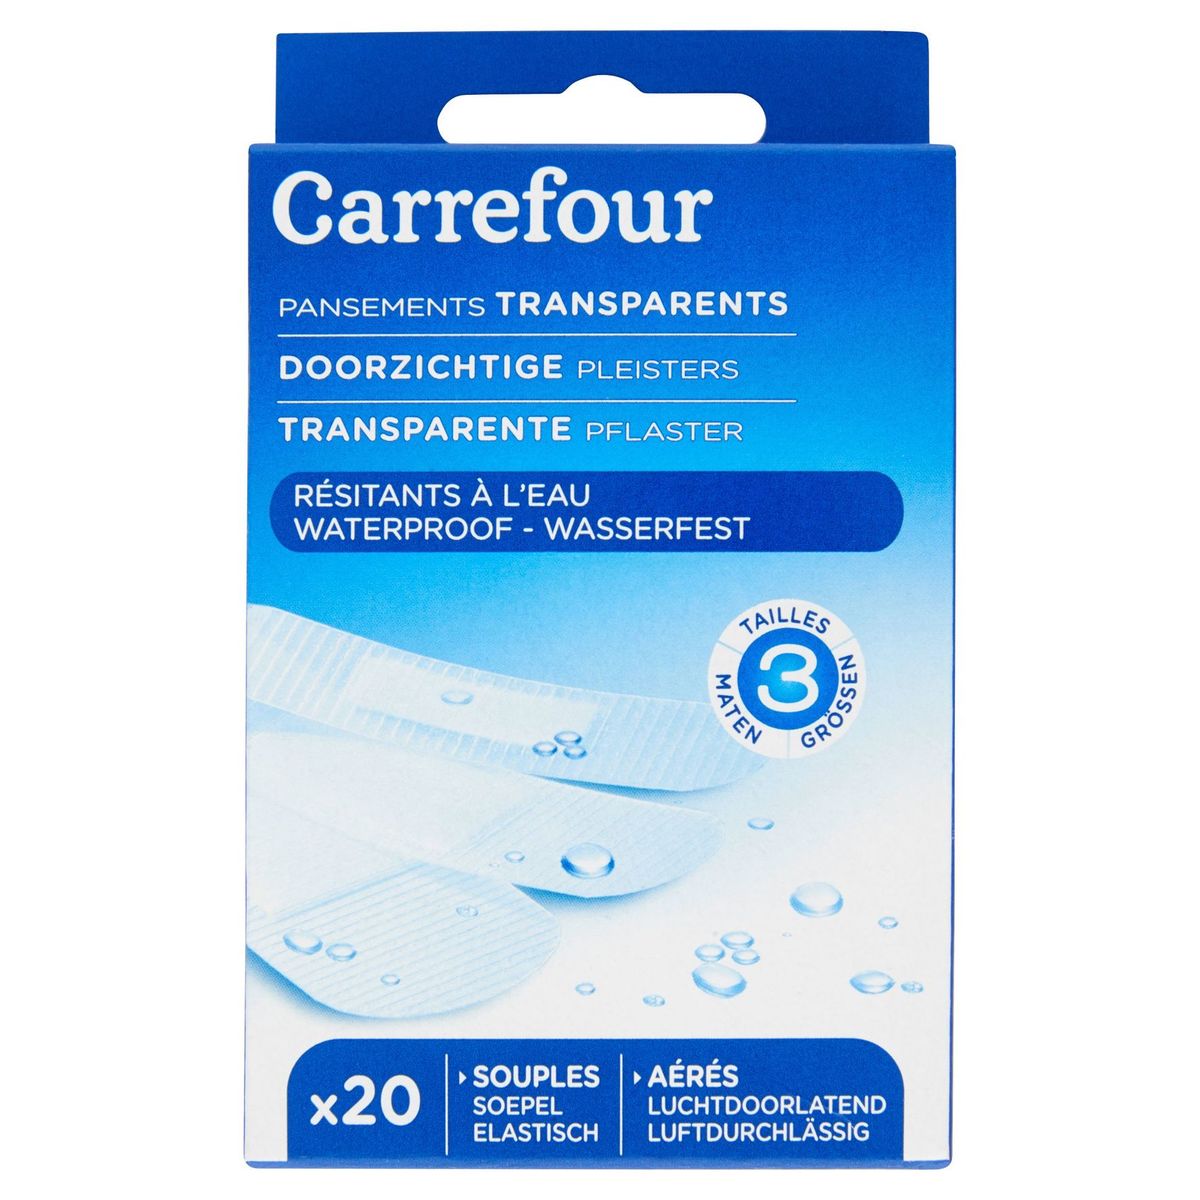 Carrefour Pansements Transparents Résistants à l'Eau x 20